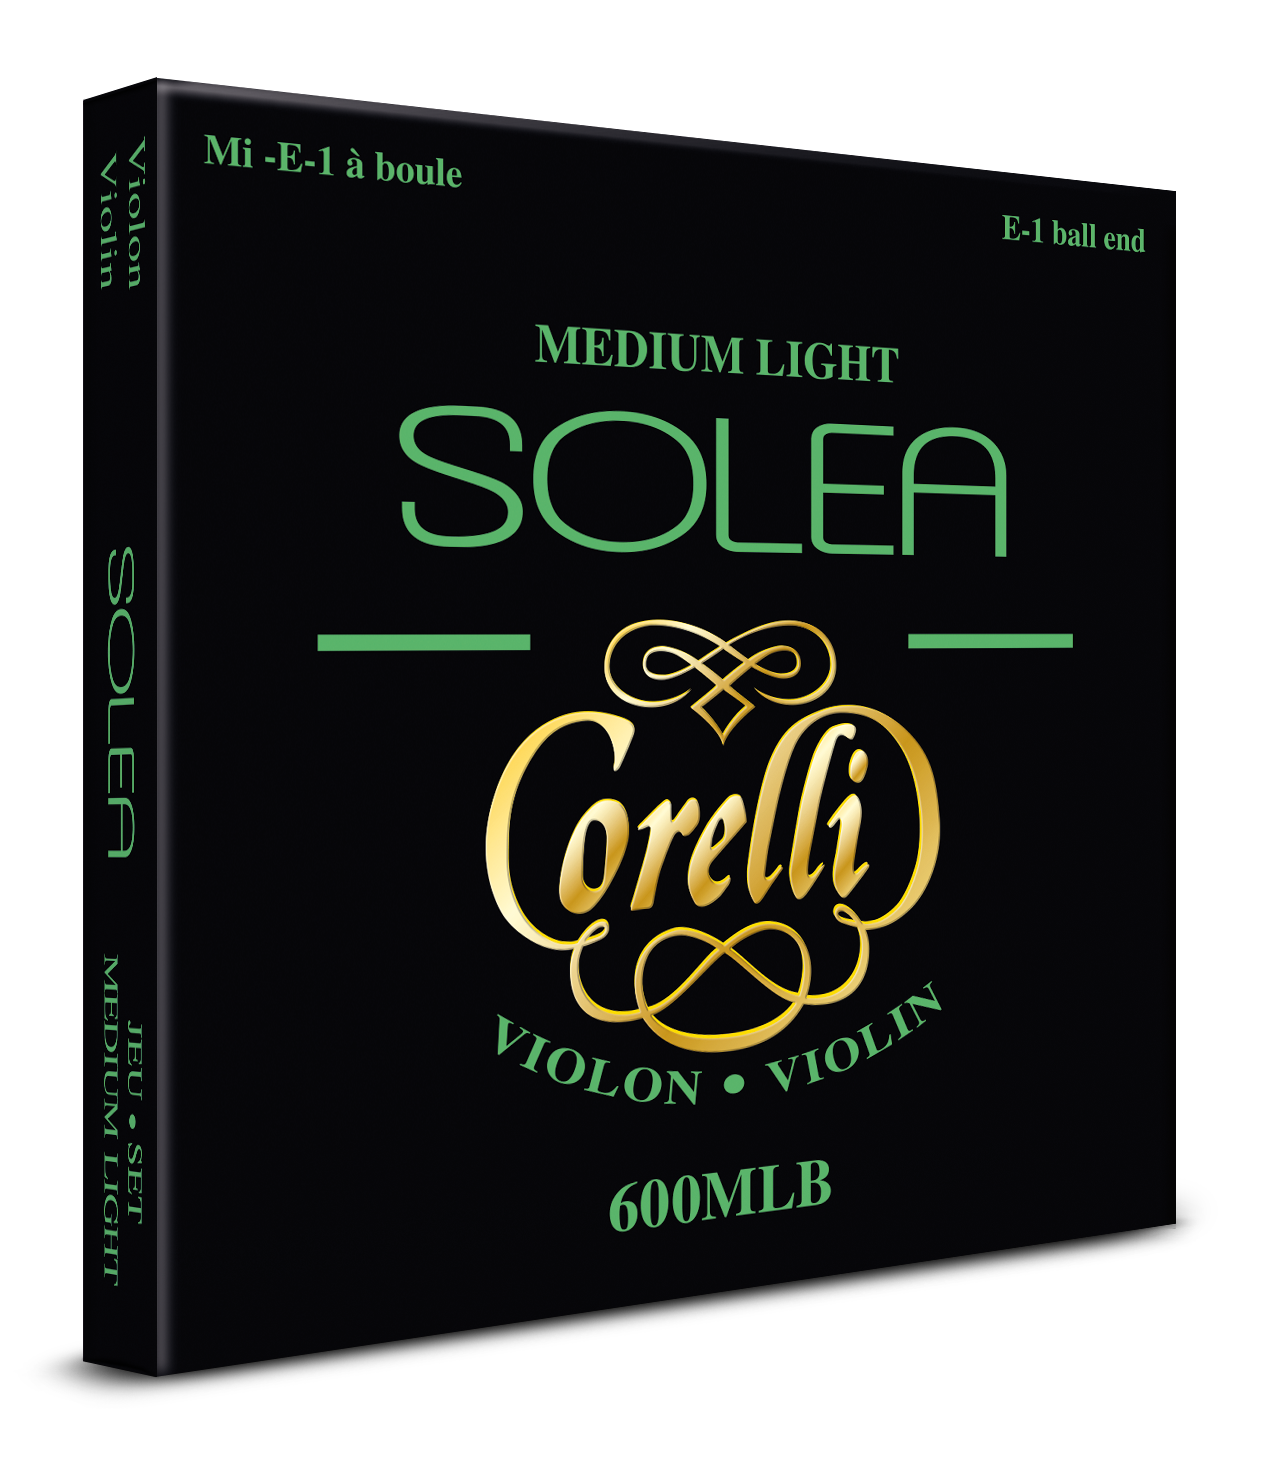 Corelli Solea medium light à boule